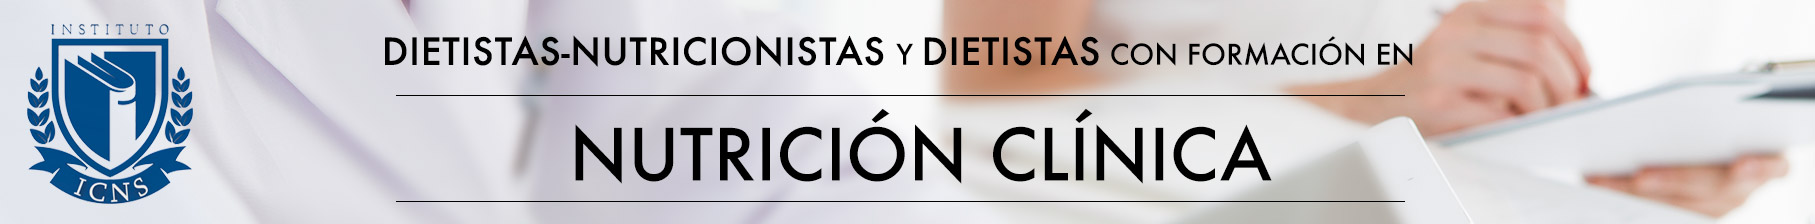 Dietistas-Nutricionistas y Dietistas con formación en Nutrición Clínica Avanzada